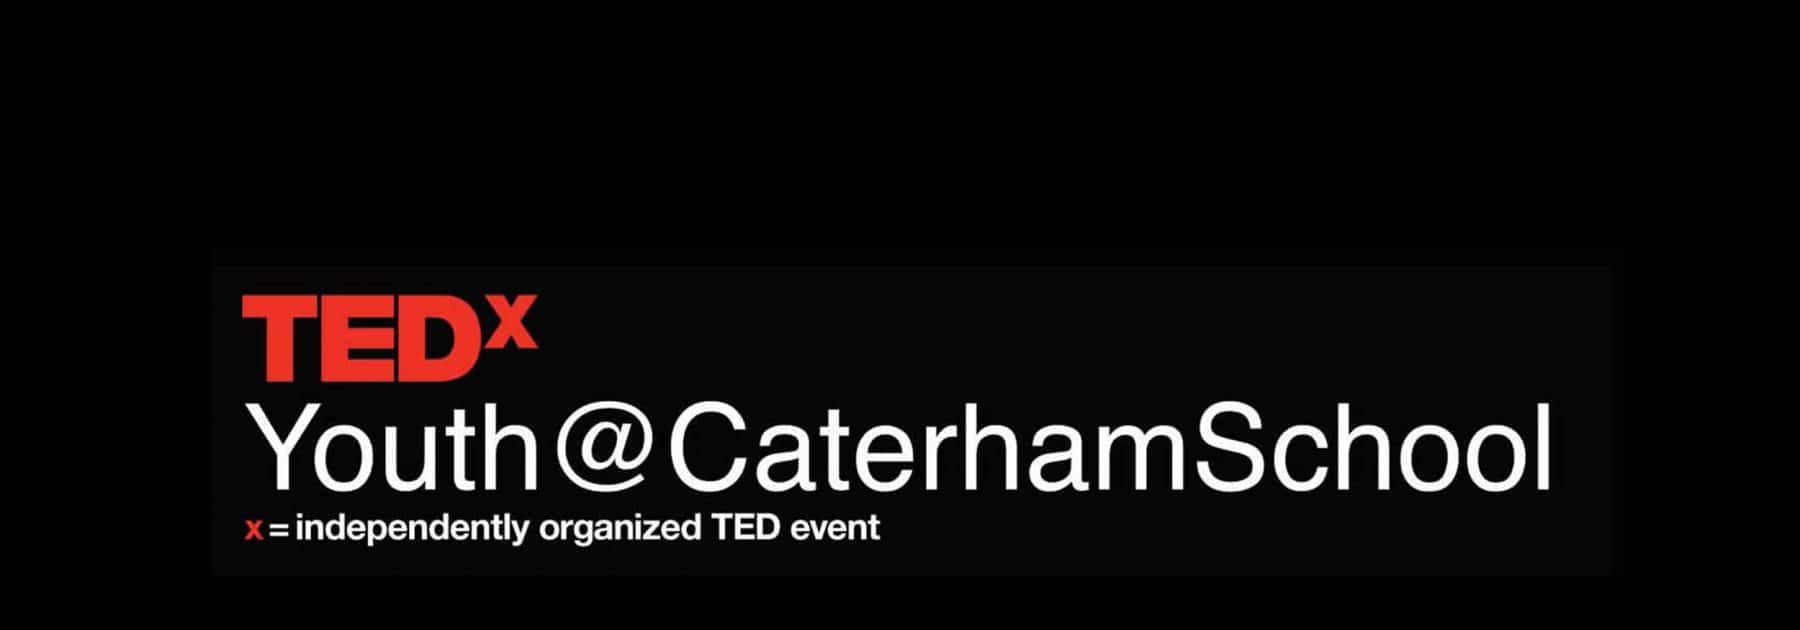 TEDx 2021